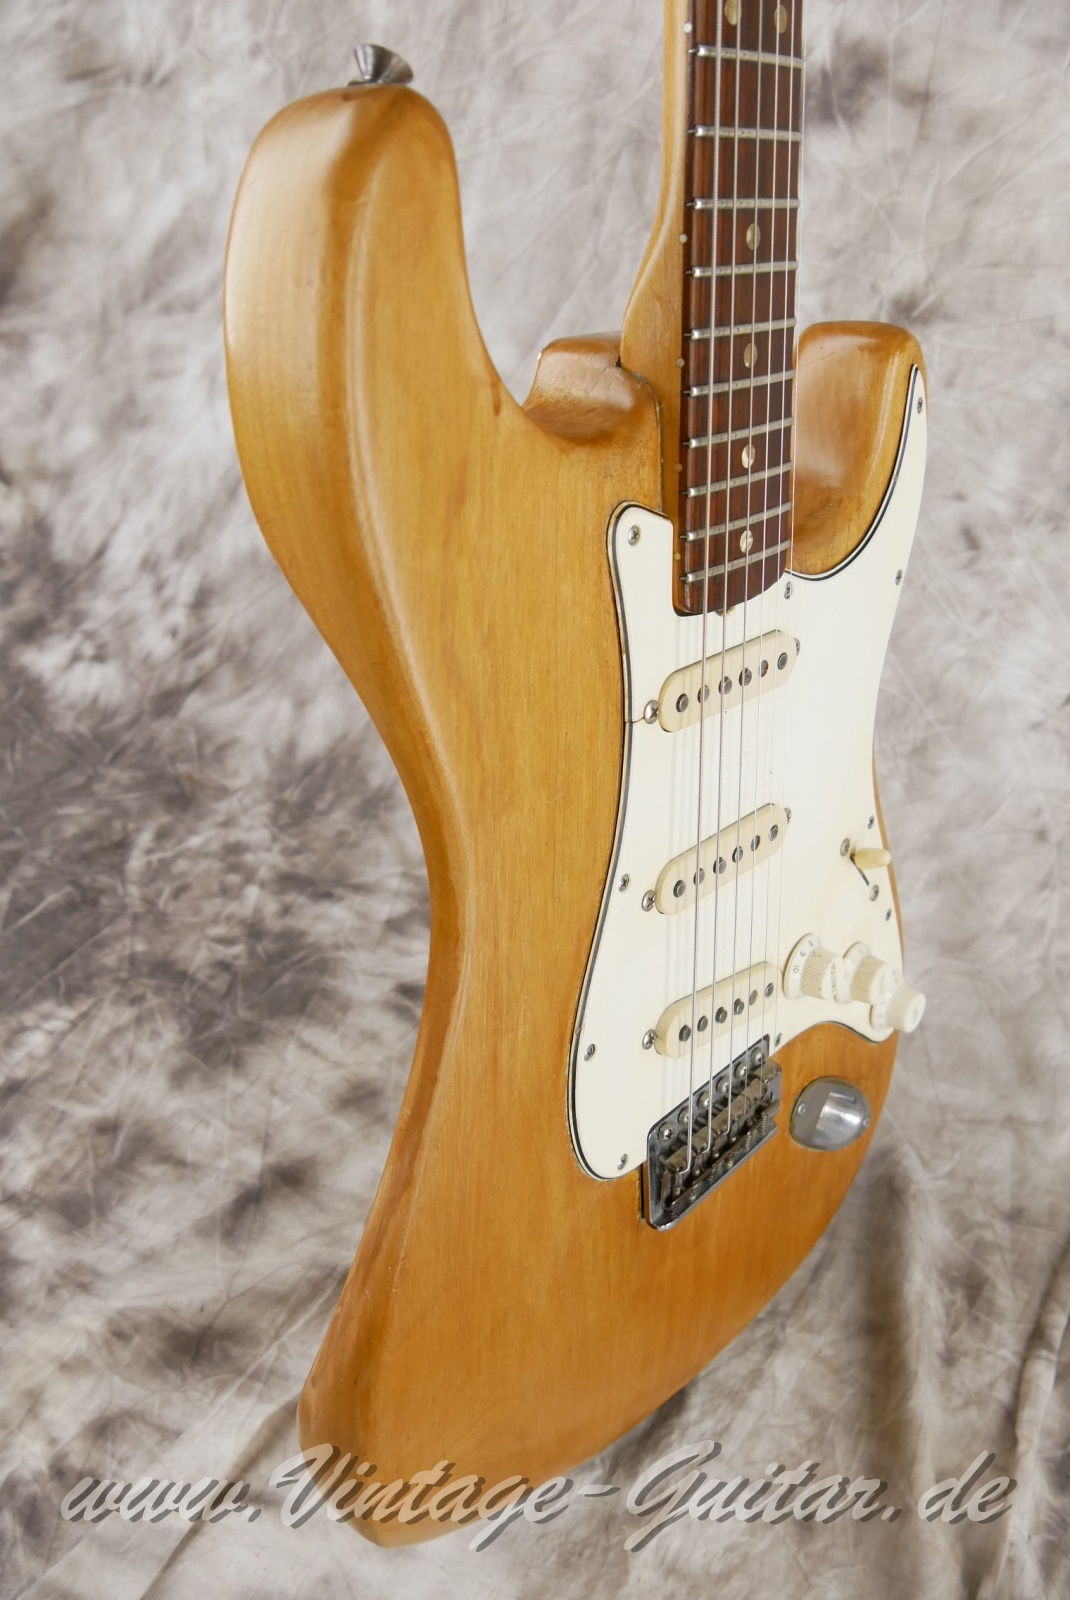 Fender_Stratocaster_body_stripped_1966-009.JPG